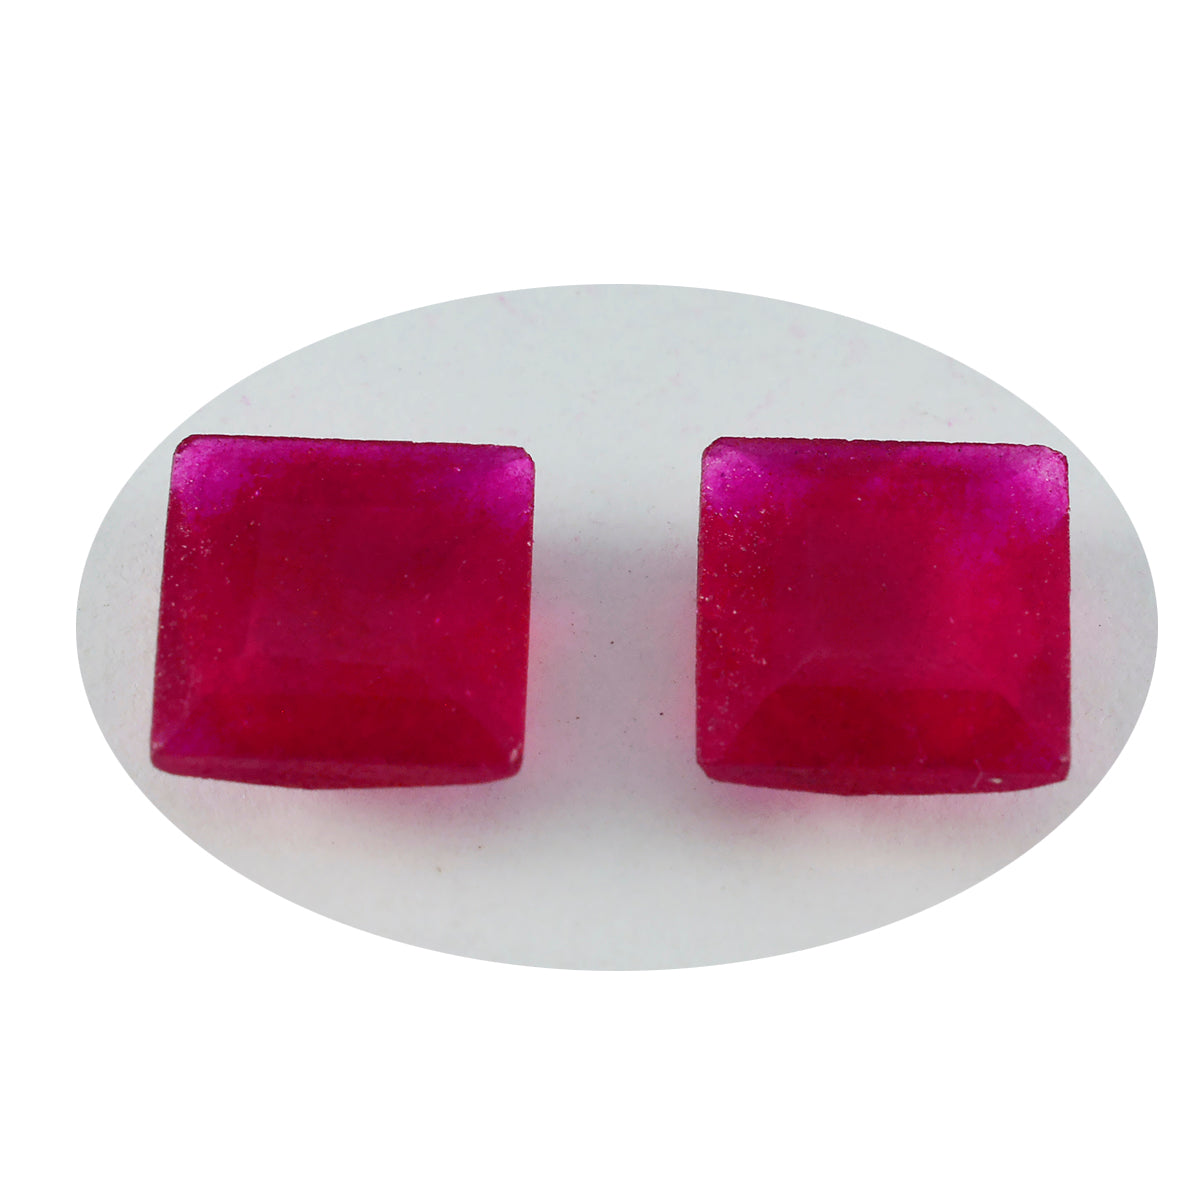 Riyogems 1 Stück echter roter Jaspis, facettiert, 13 x 13 mm, quadratische Form, schön aussehender Qualitäts-Edelstein